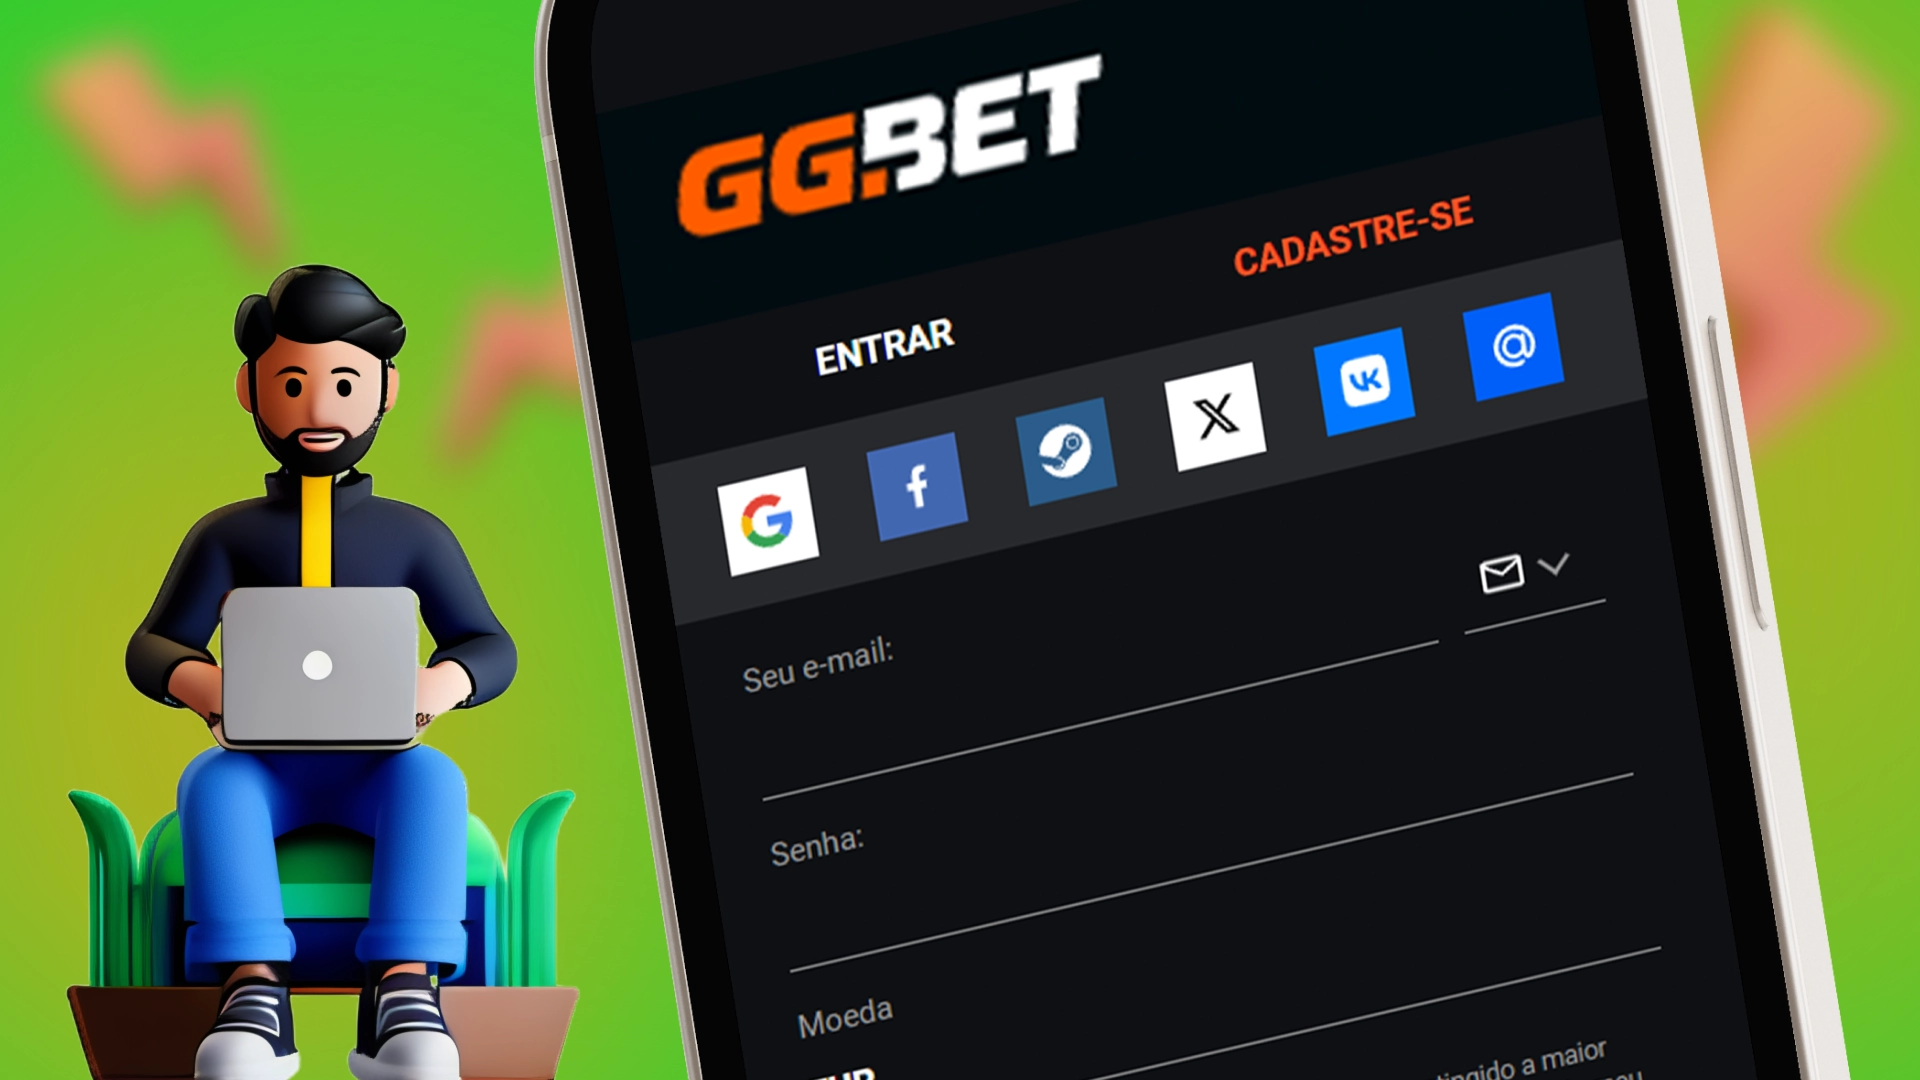 Registre uma nova conta no aplicativo GGbet.